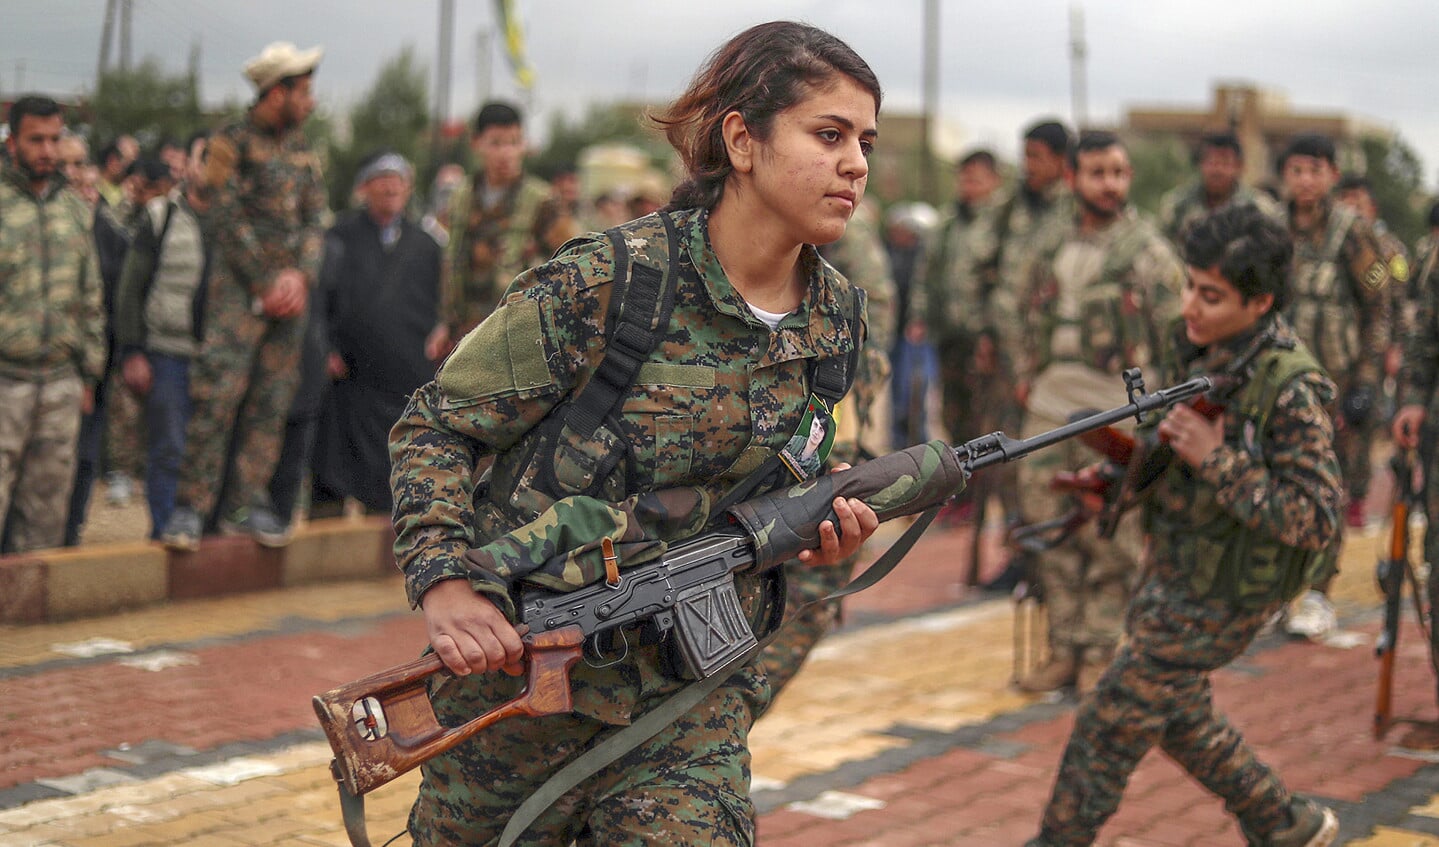 In de ‘laatste slag’ met ISIS vallen aan de kant van de Syrische Democratische Troepen nog steeds slachtoffers. Hier strijders van een Koerdische vrouweneenheid op de begrafenis van een collega, zaterdag in Qamishli.